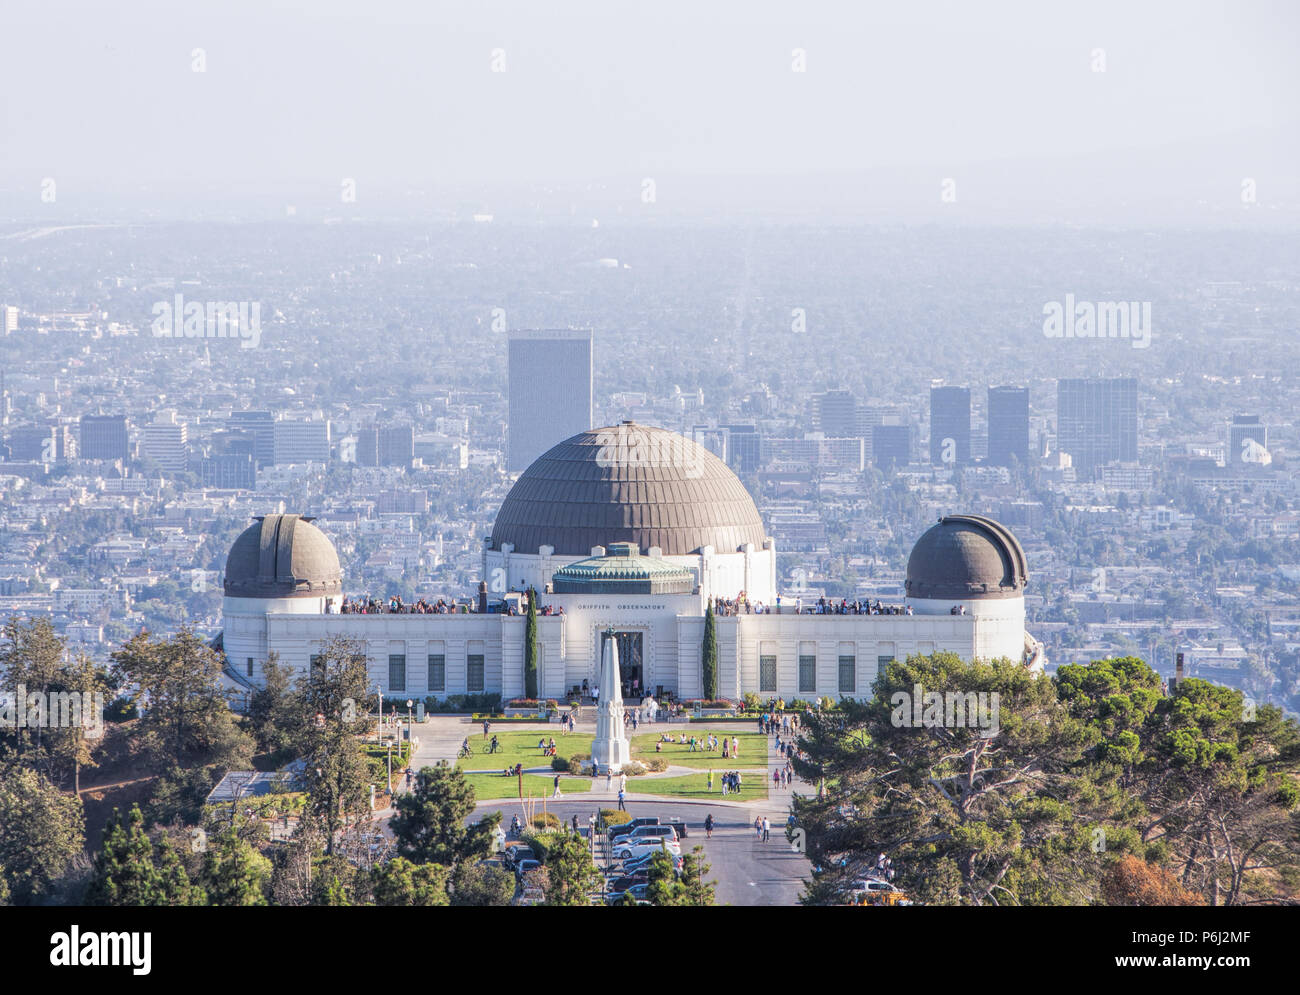 4 de septiembre de 2016 - Los Angeles, Estados Unidos. Famoso Observatorio Griffith edificio del museo en las colinas de Hollywood. Muchos turistas visitan el planetario con sceni Foto de stock